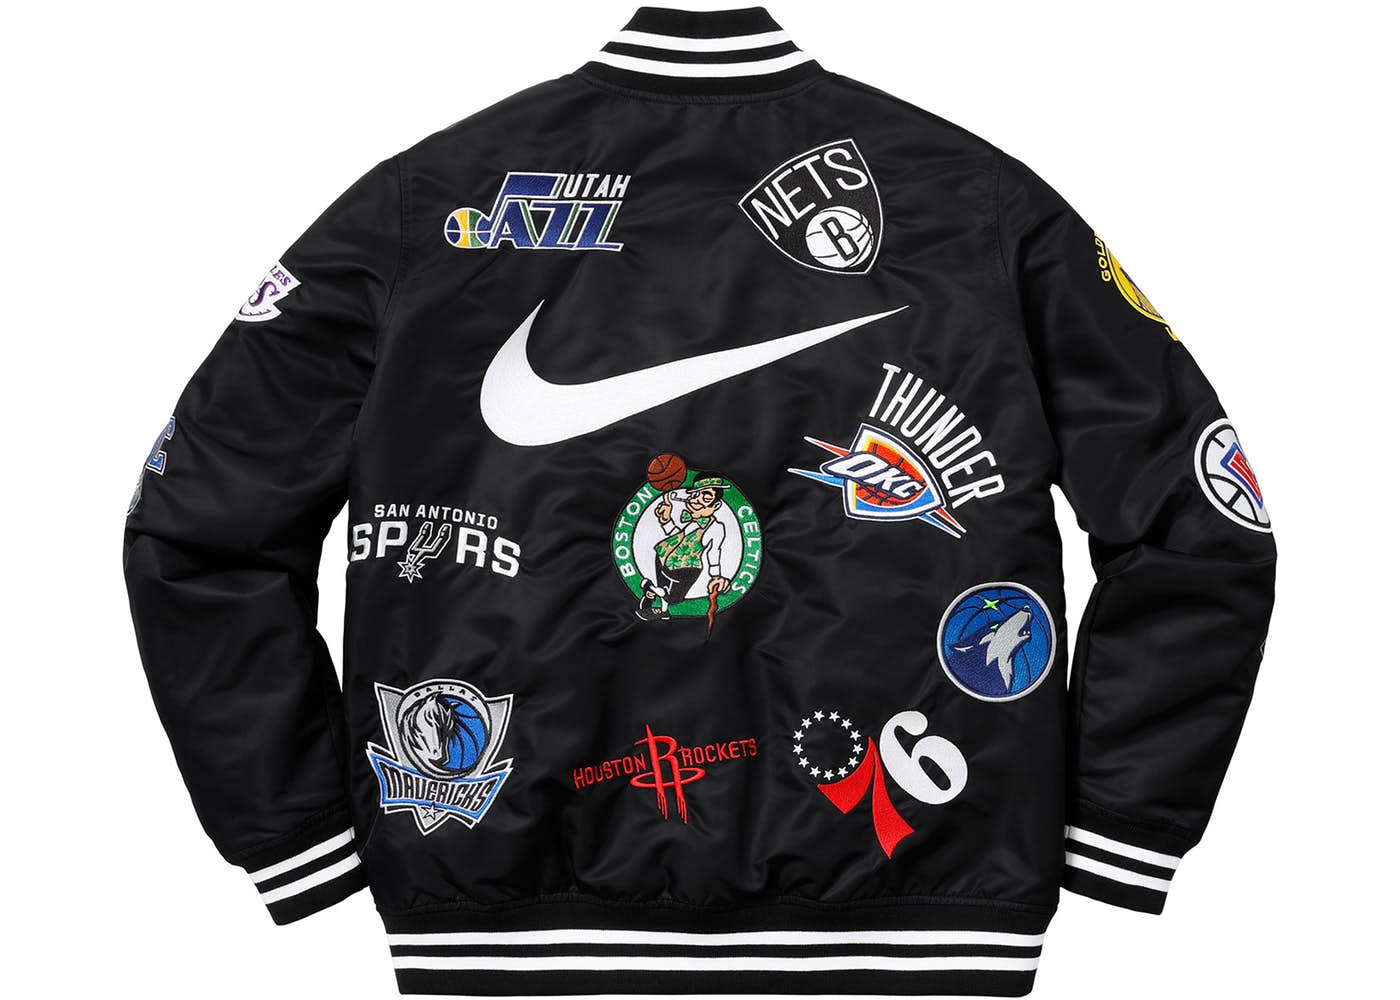 Supreme x Nike x NBA Teams Warm Up Jacket 'Black' | Men's Size L